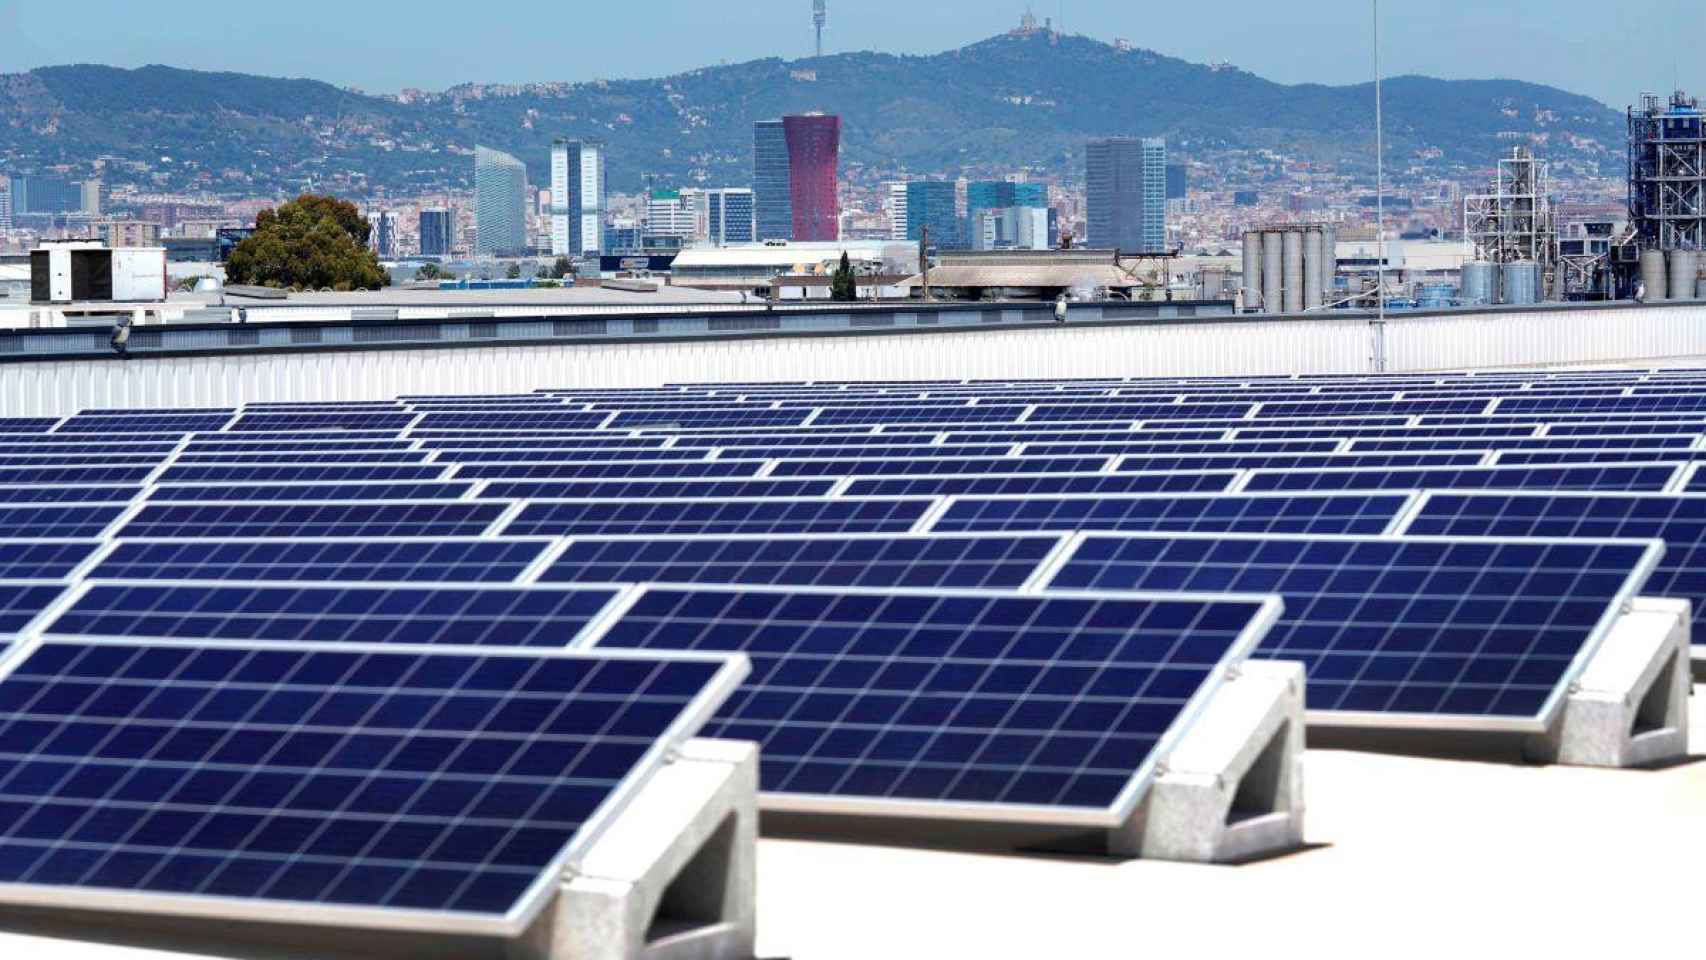 Paneles solares en la cubierta del almacén para la venta online de Mercadona ubicado en la Zona Franca /MERCADONA